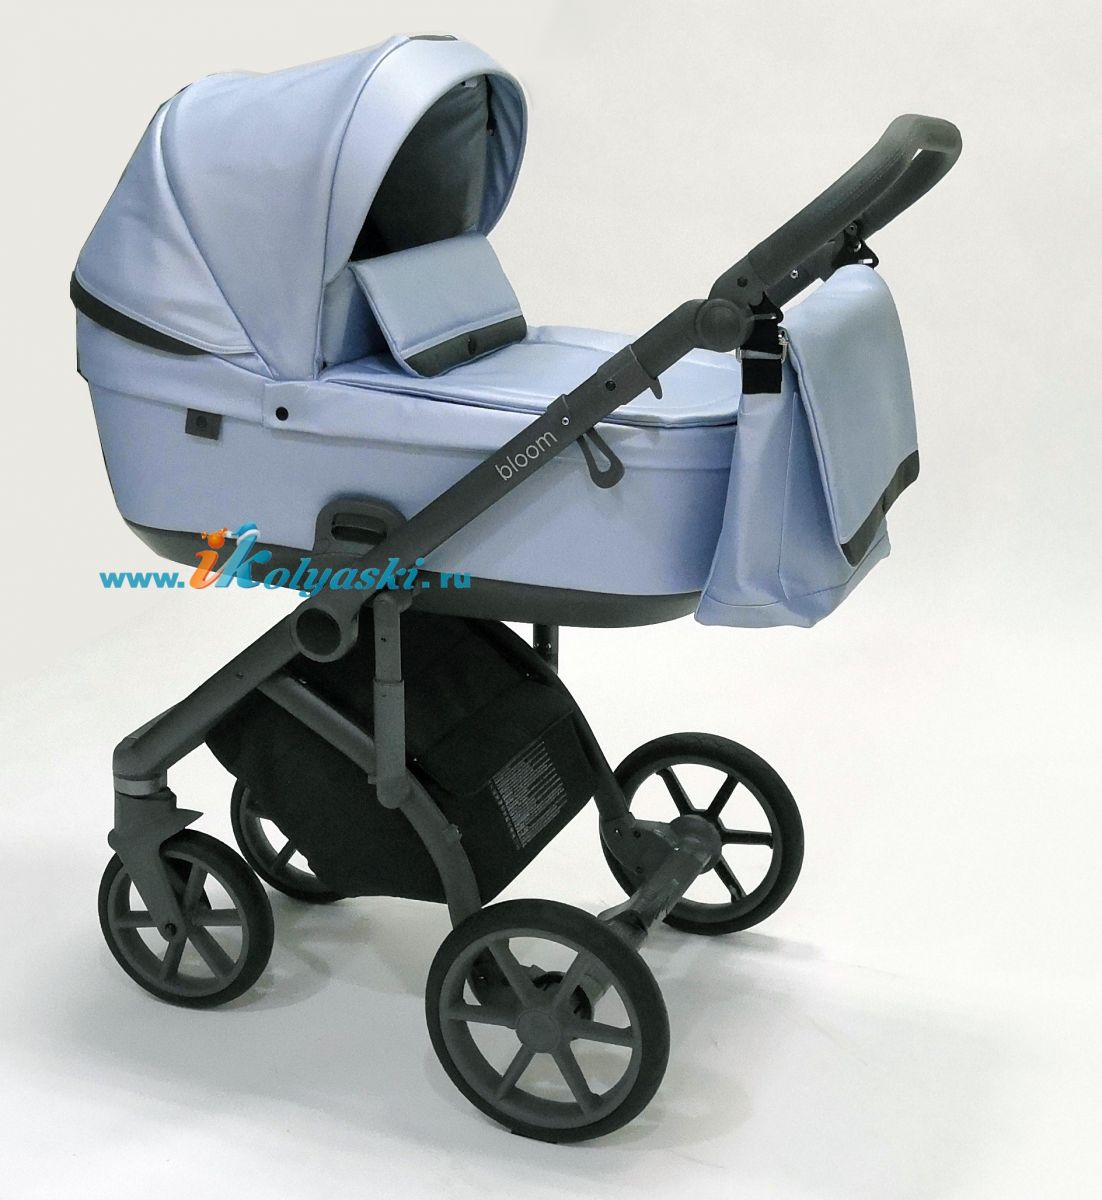 Roan Bloom 3 в 1 детская коляска для новорожденного на гелиевых бескамерных поворотных колесах с прогулочным блоком и автокреслом - купить в интернет-магазине в Москве с доставкой по РФ - цвет Blue Pearl 